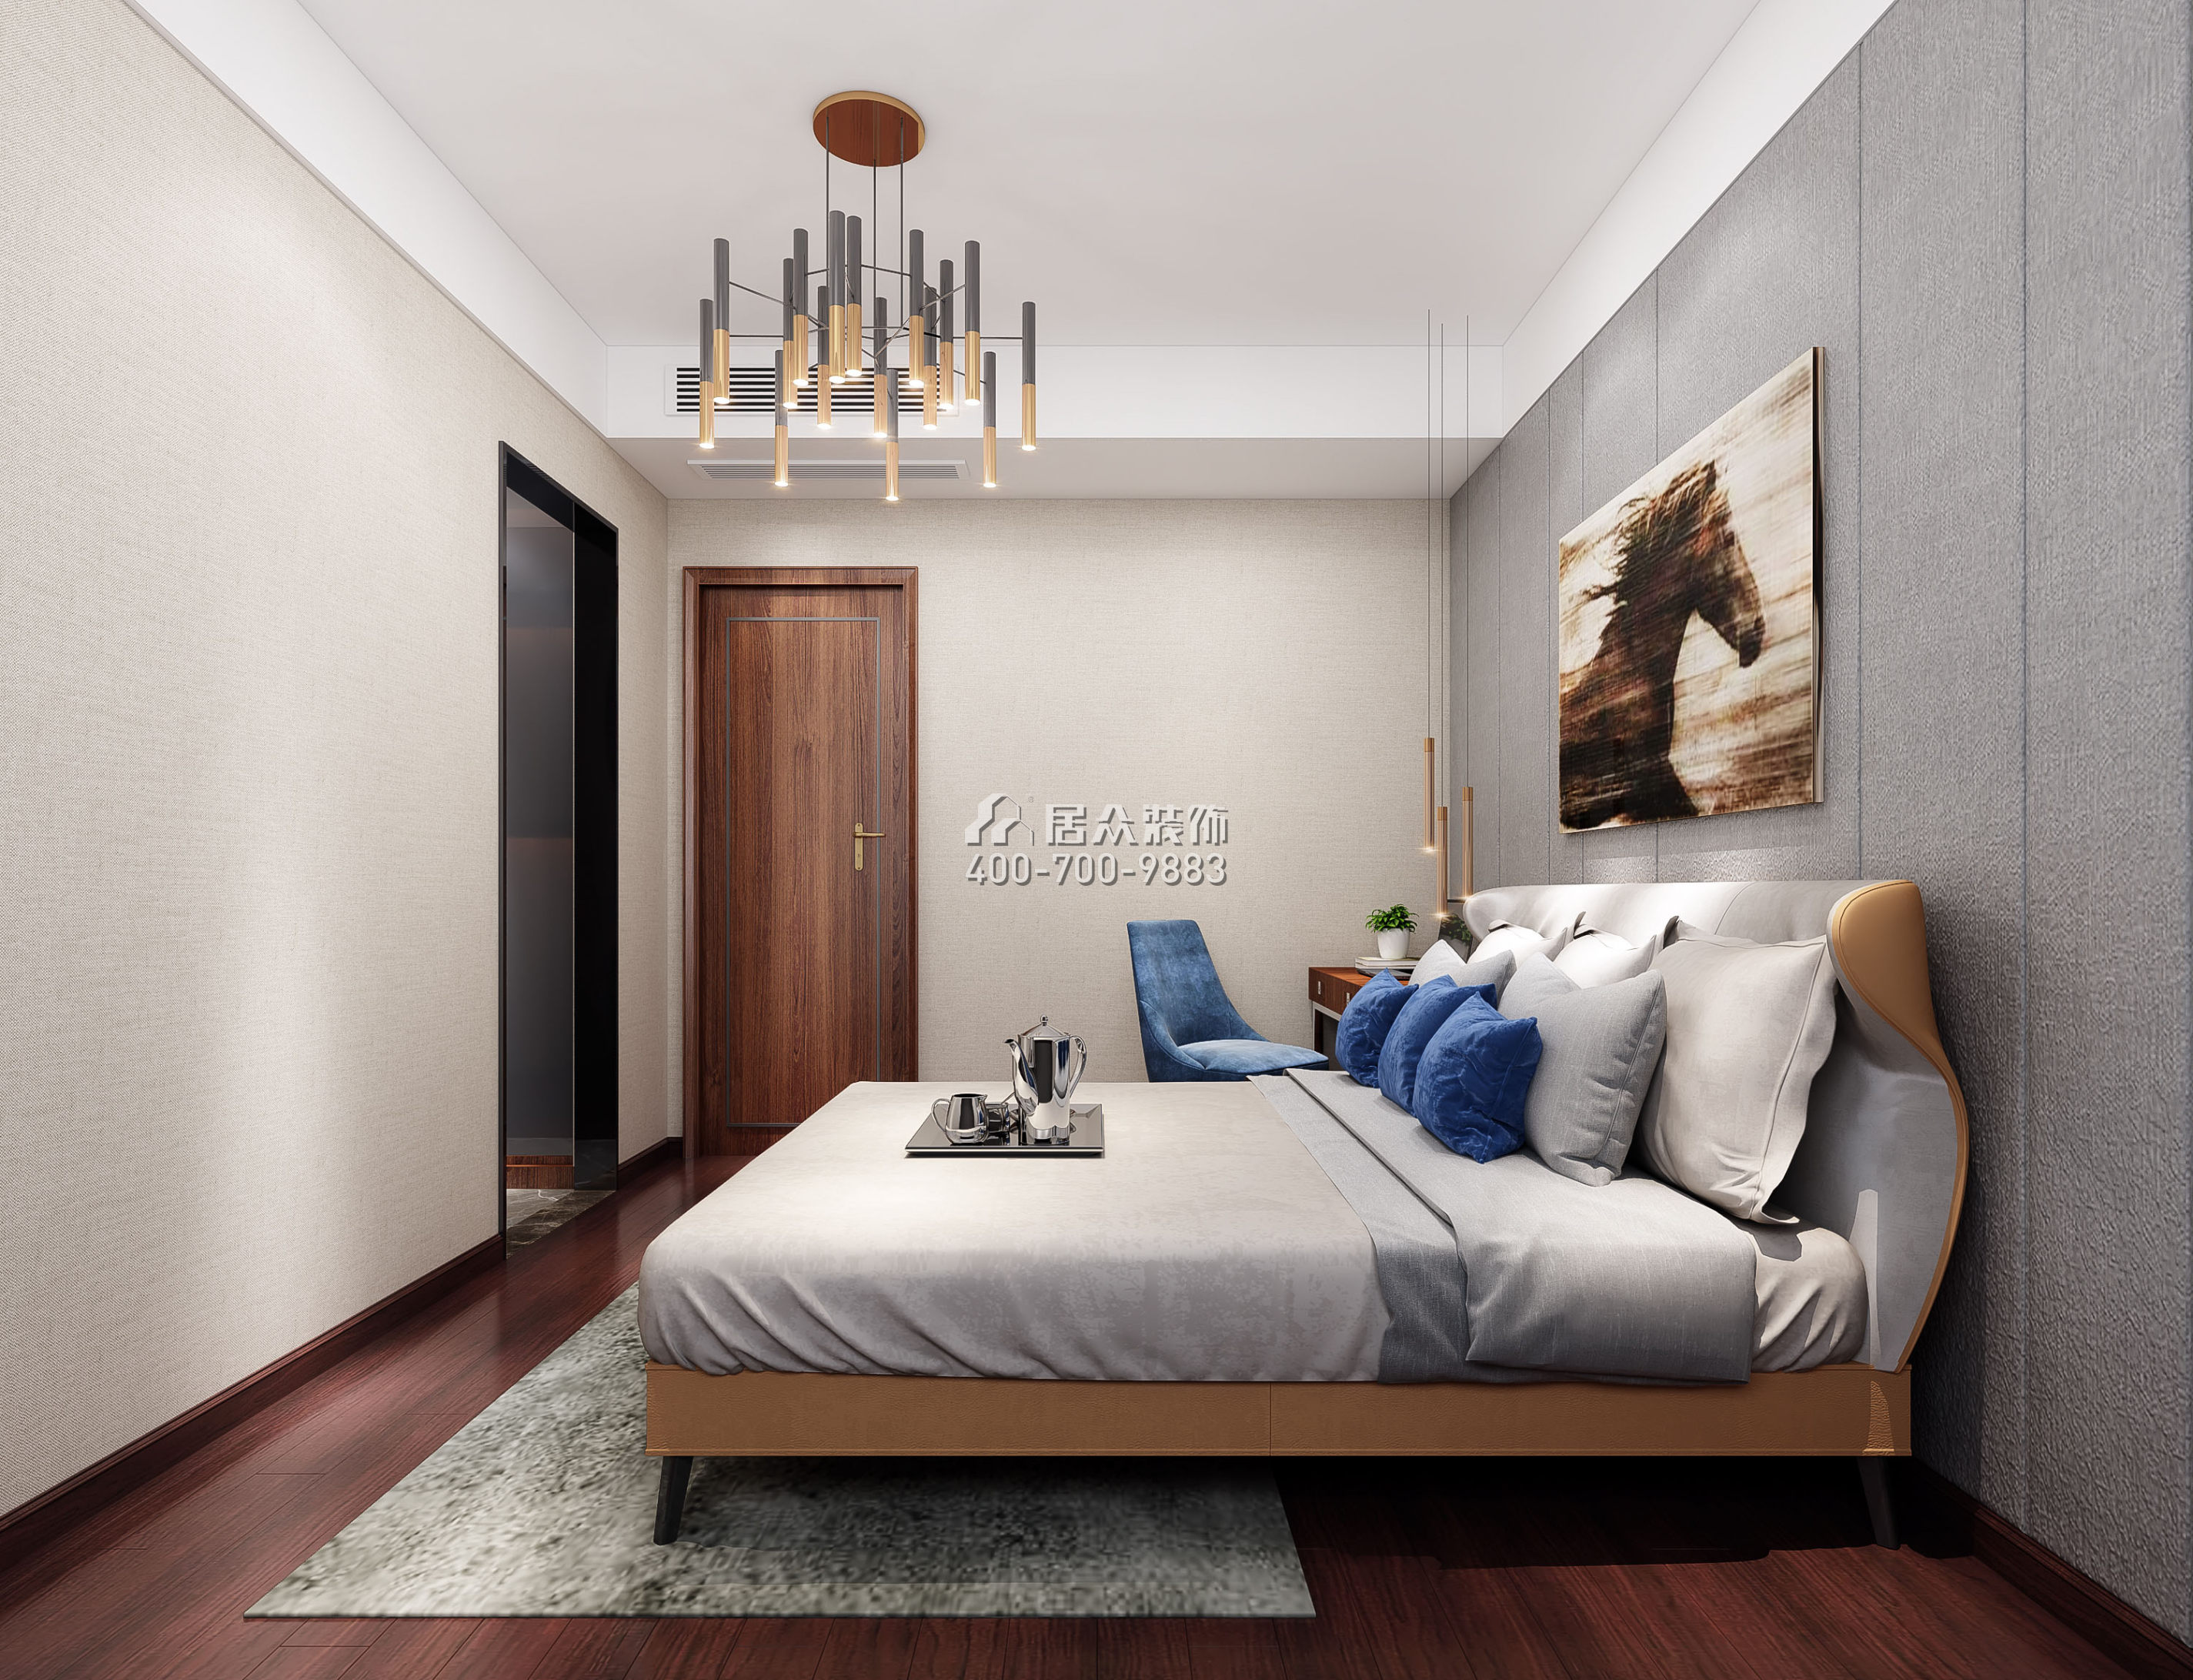 香山里花园四期170平方米中式风格平层户型卧室装修效果图